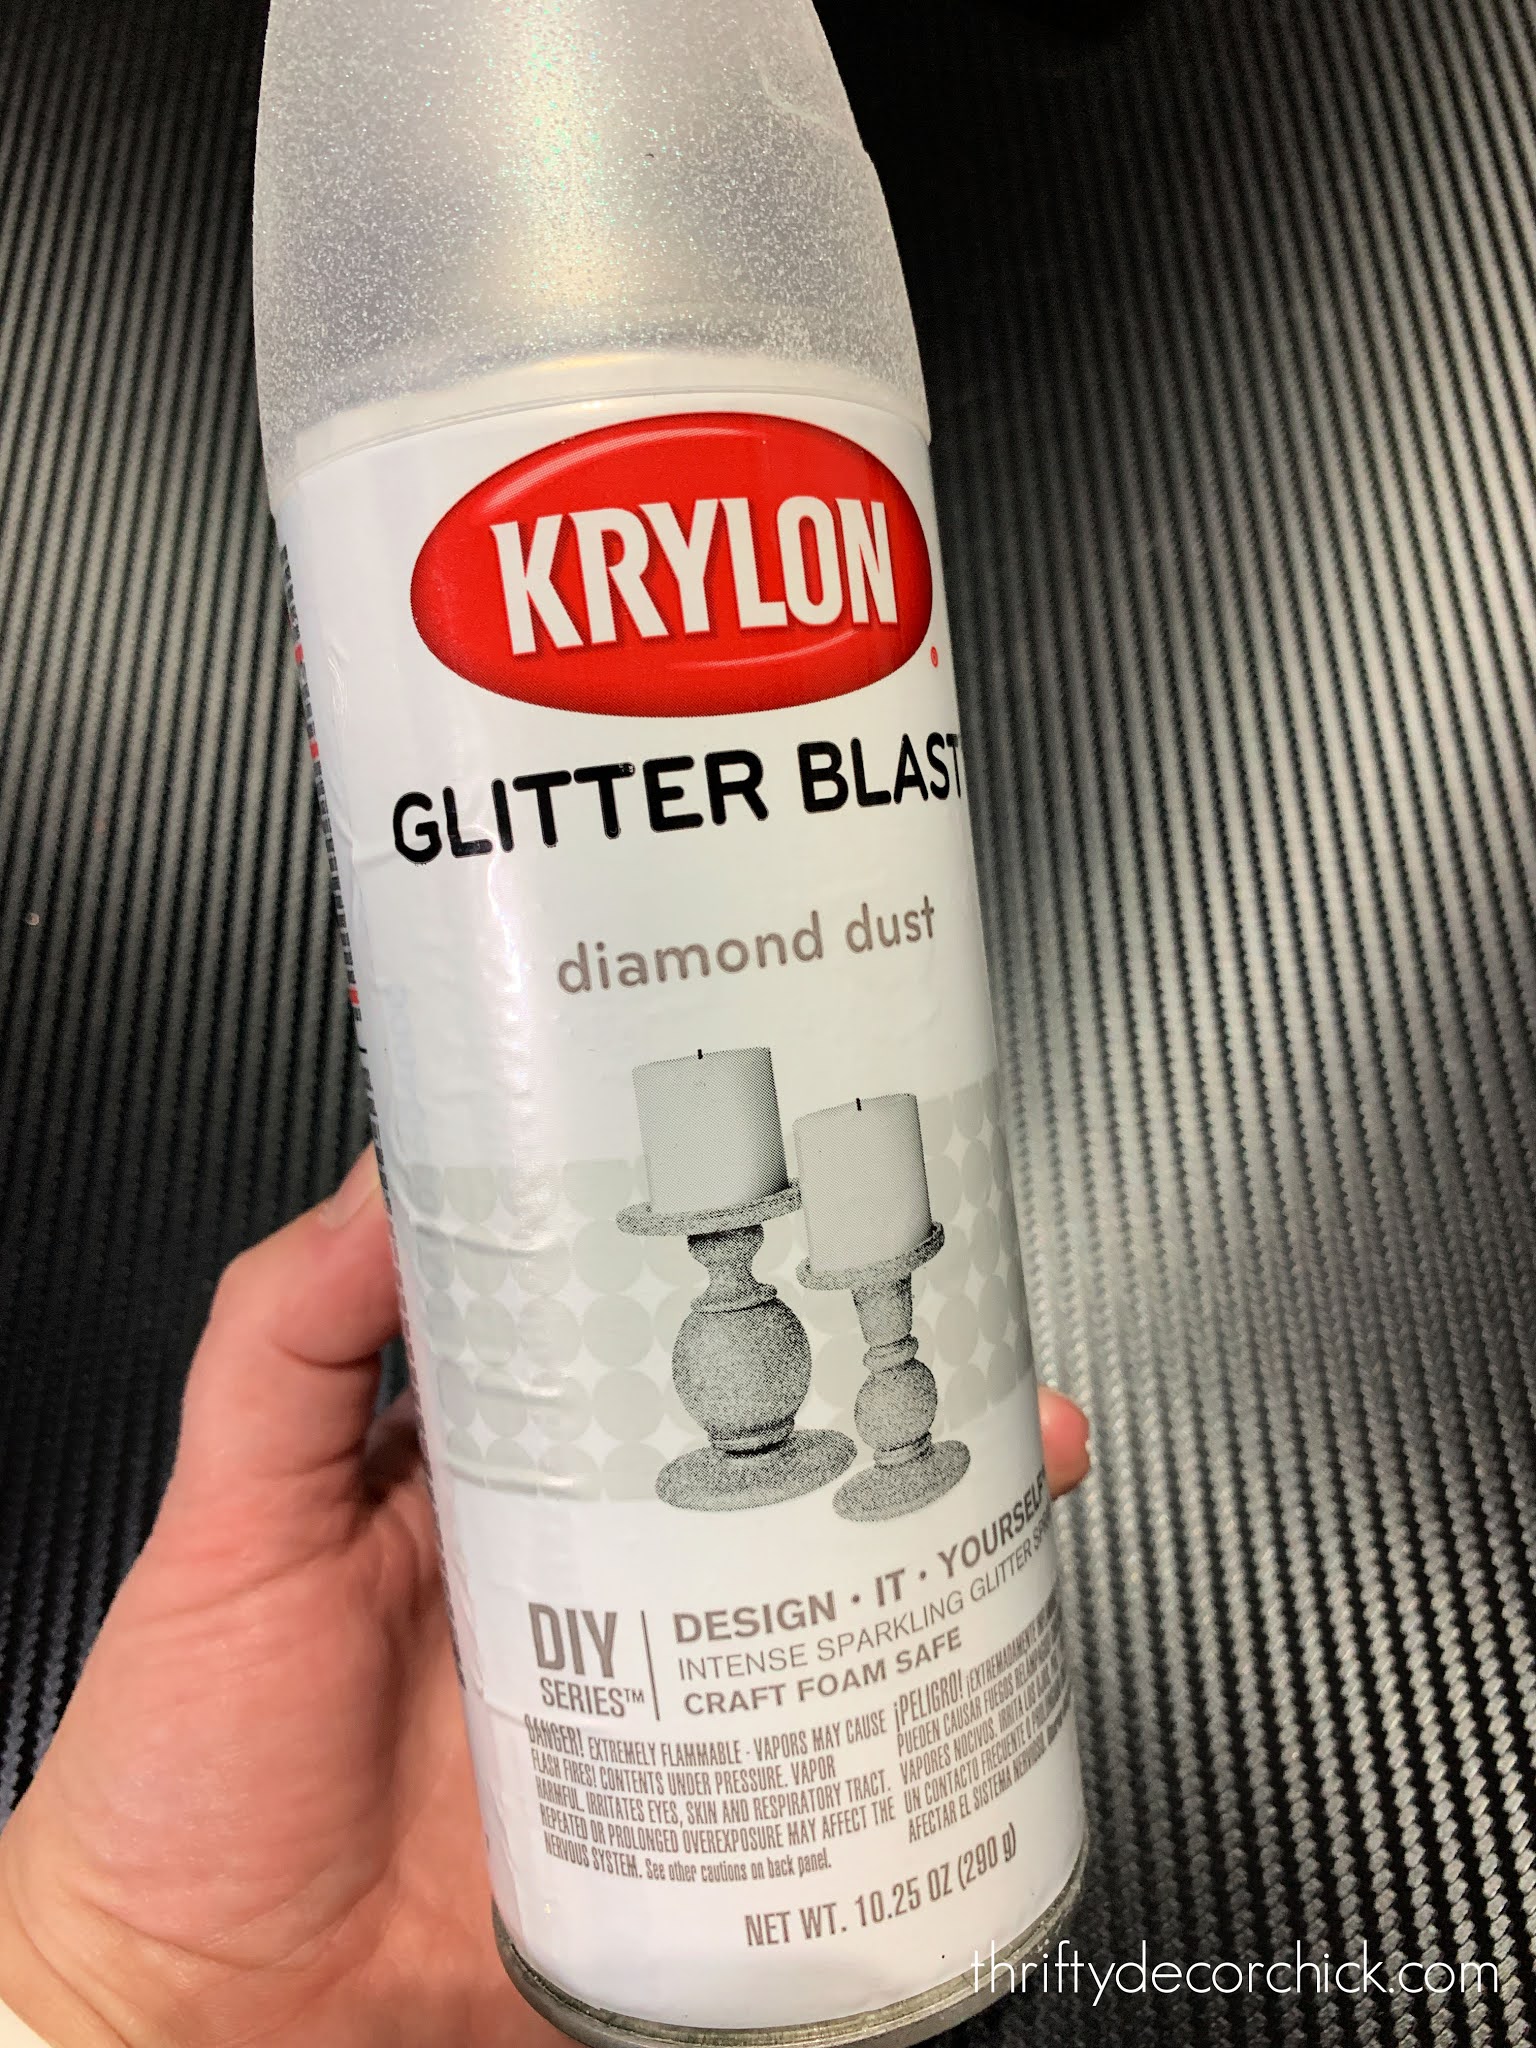 Krylon Glitter Sprays